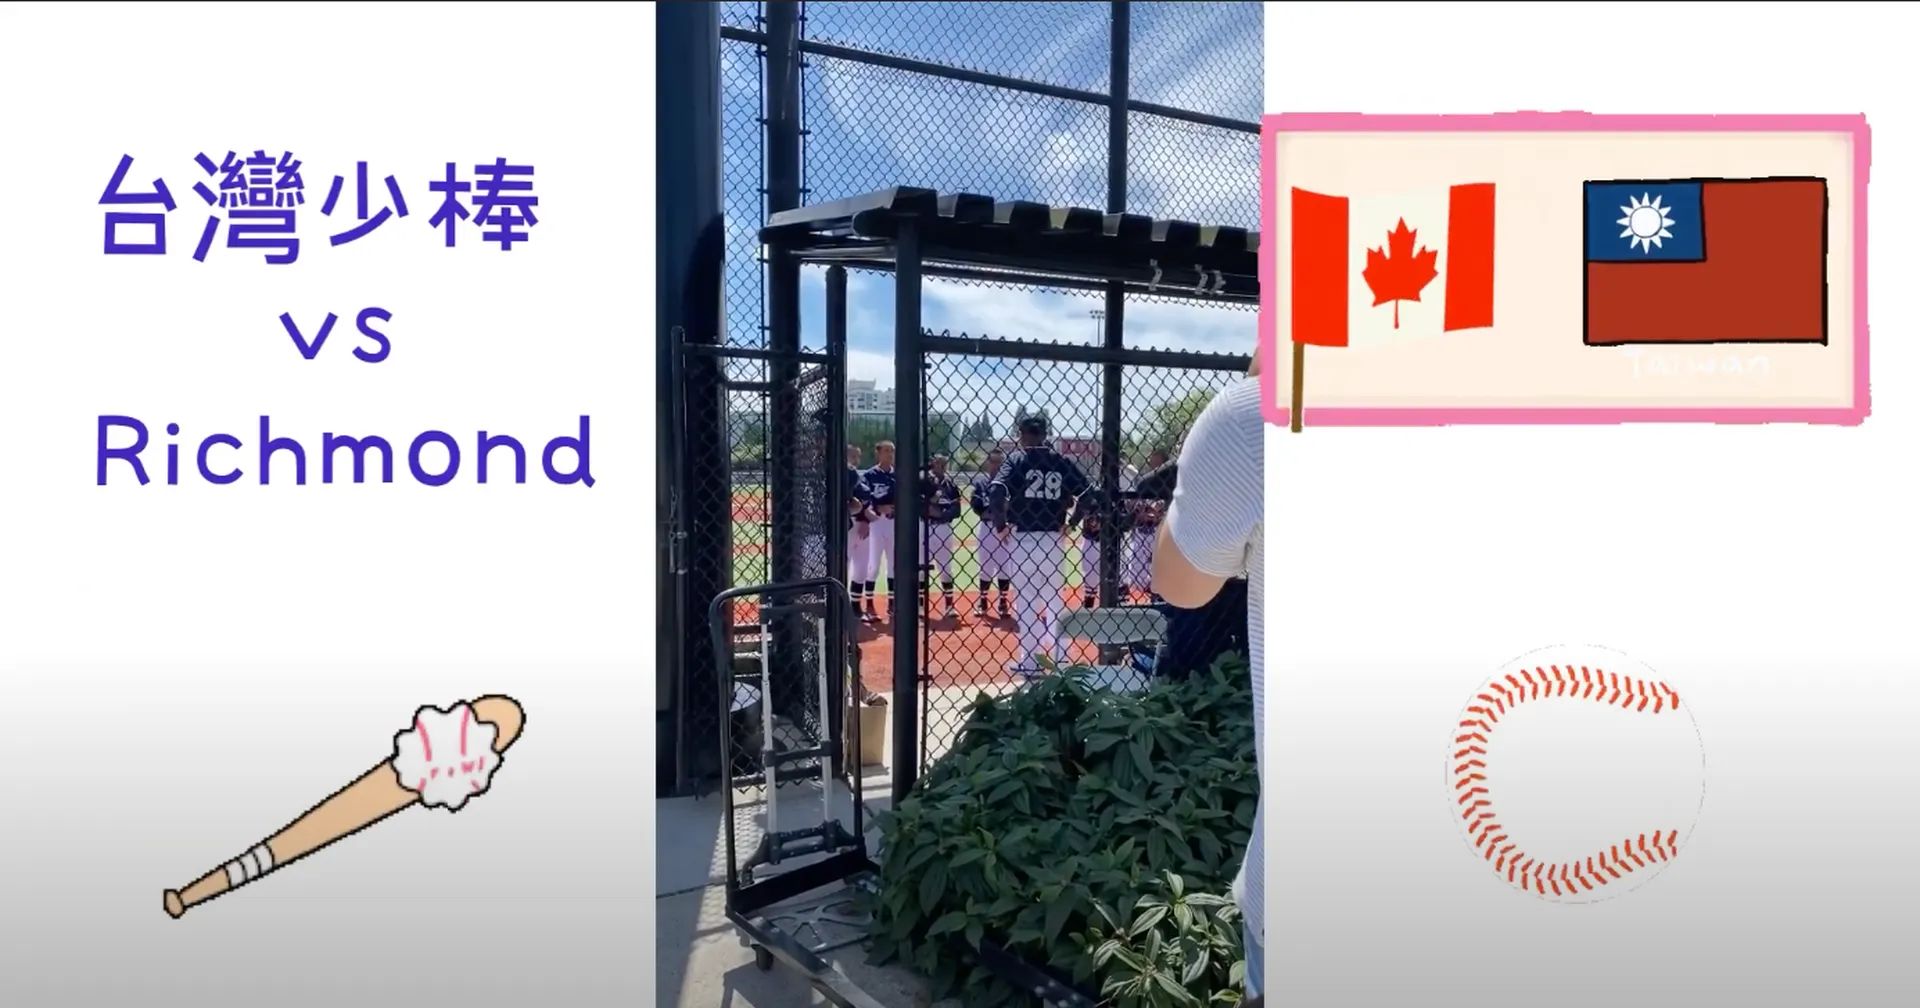 2022 貝比魯斯棒球聯盟少棒賽台灣代表隊 vs 加拿大溫哥華小山少棒隊熱身賽 | 2022 Taiwan team vs Little Mountain Baseball